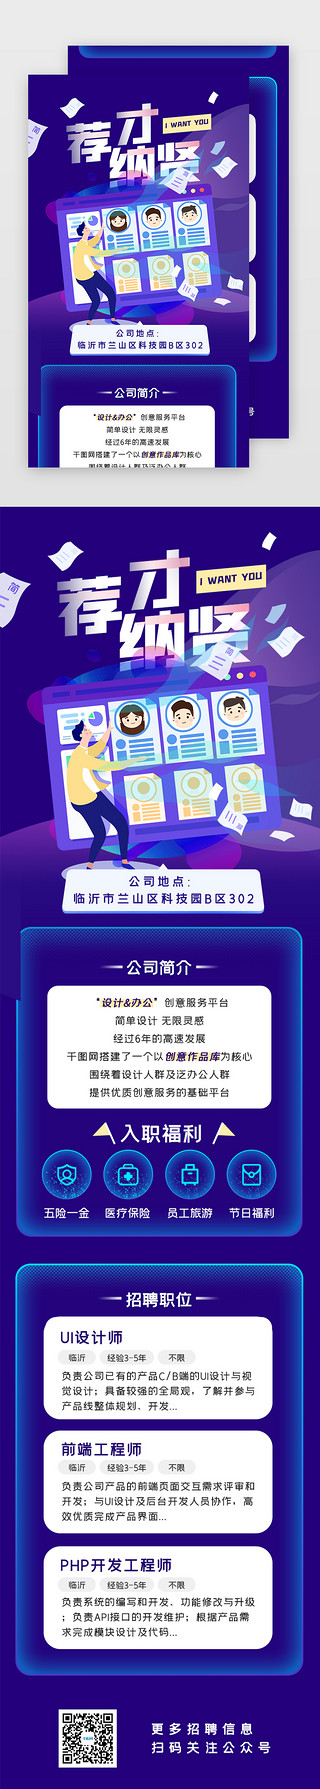 校园招聘宣传折页UI设计素材_蓝紫色插画风公司招聘H5